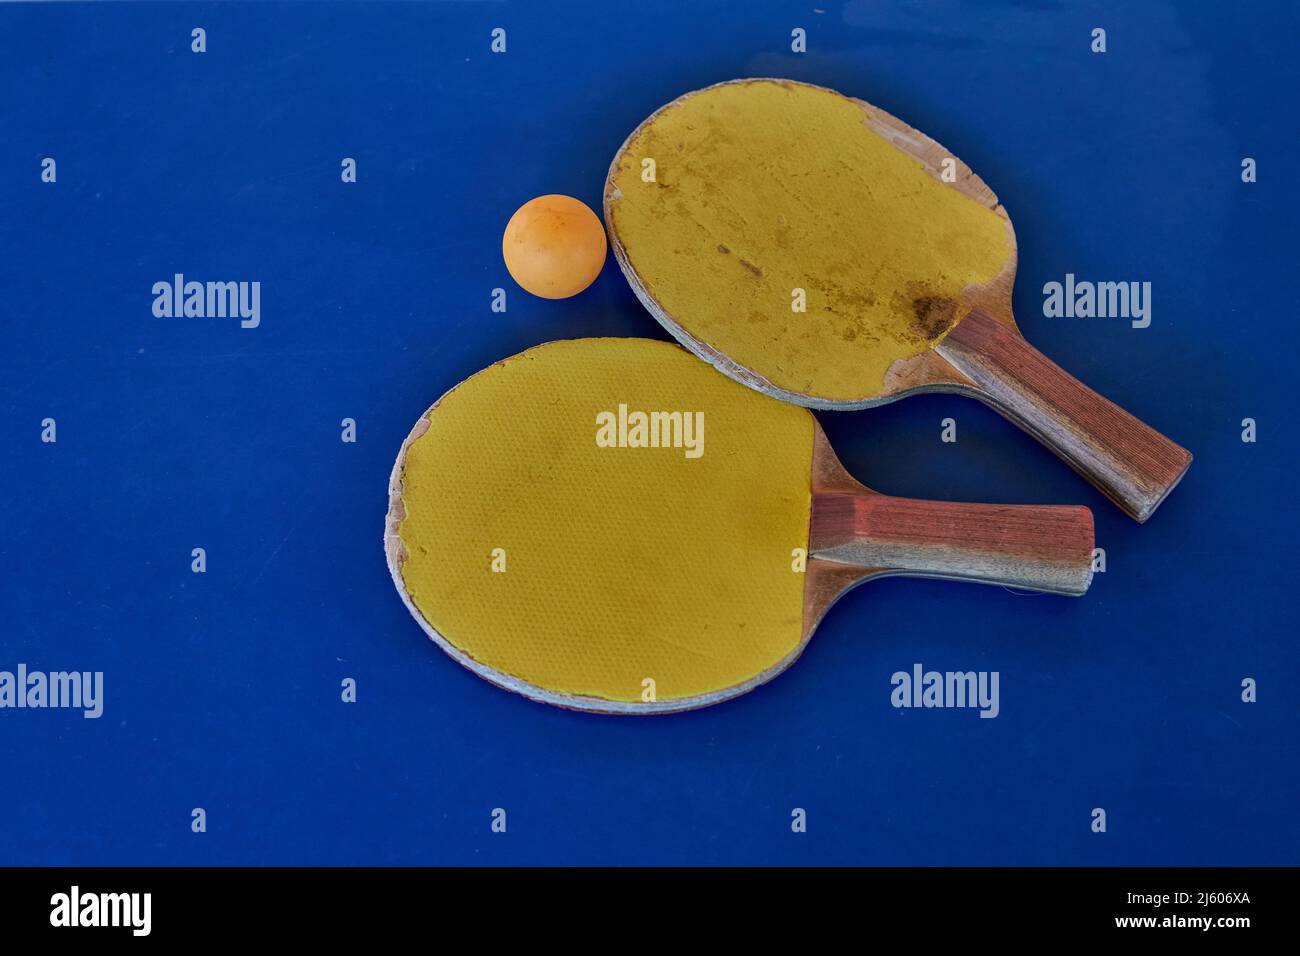 Raquettes de ping-pong jaunes et boule orange sur table bleue, plat. Espace de copie, horizontal Banque D'Images